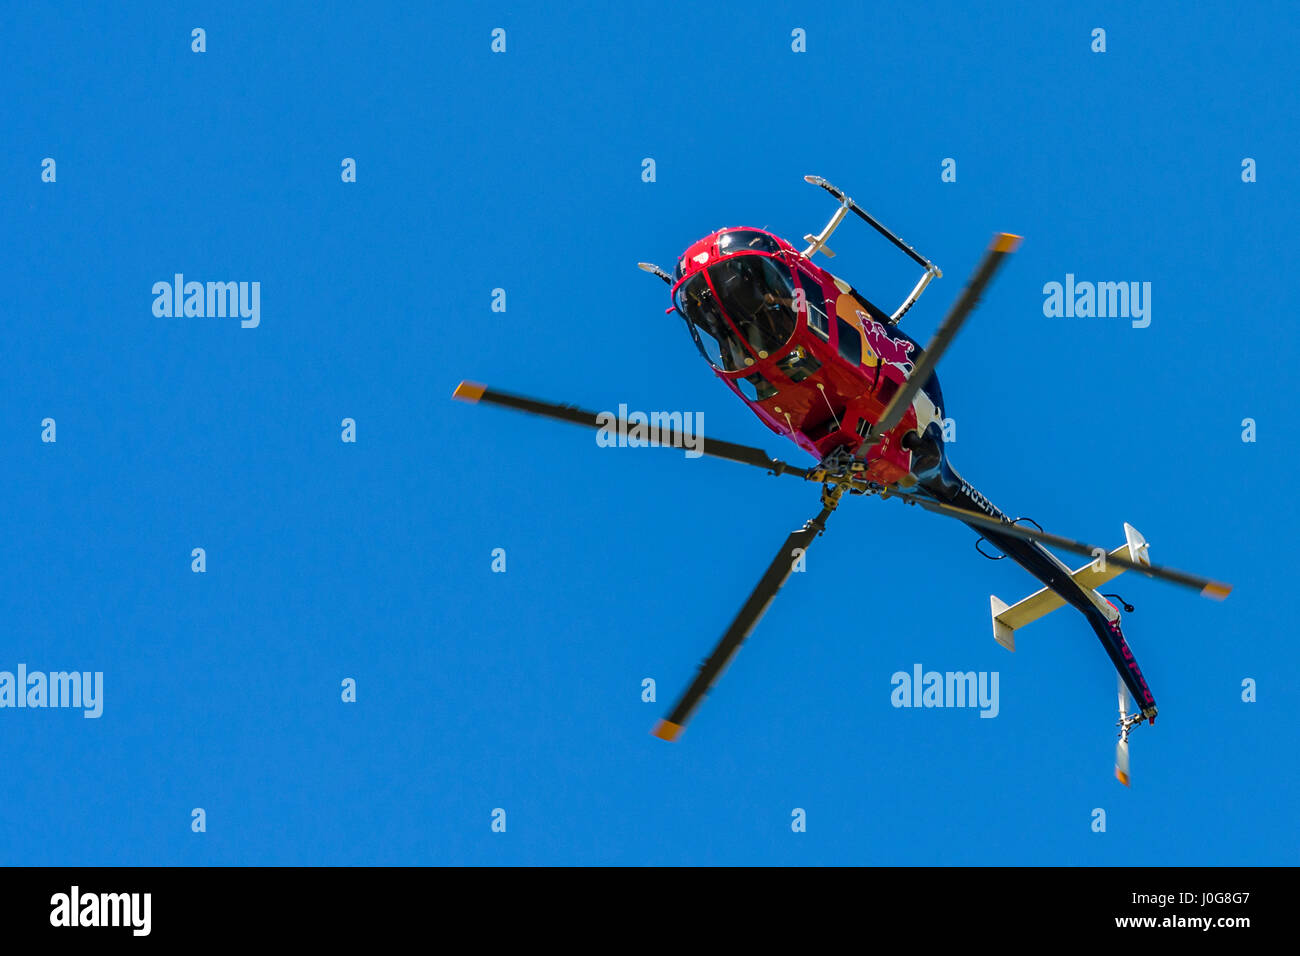 Rot Hubschrauber in der Luft Vorderansicht, in Richtung Betrachter auf einfachen Hintergrund Durchführung Kunstflug Manöver, Flying Bulls aerobatic Display Team Stockfoto